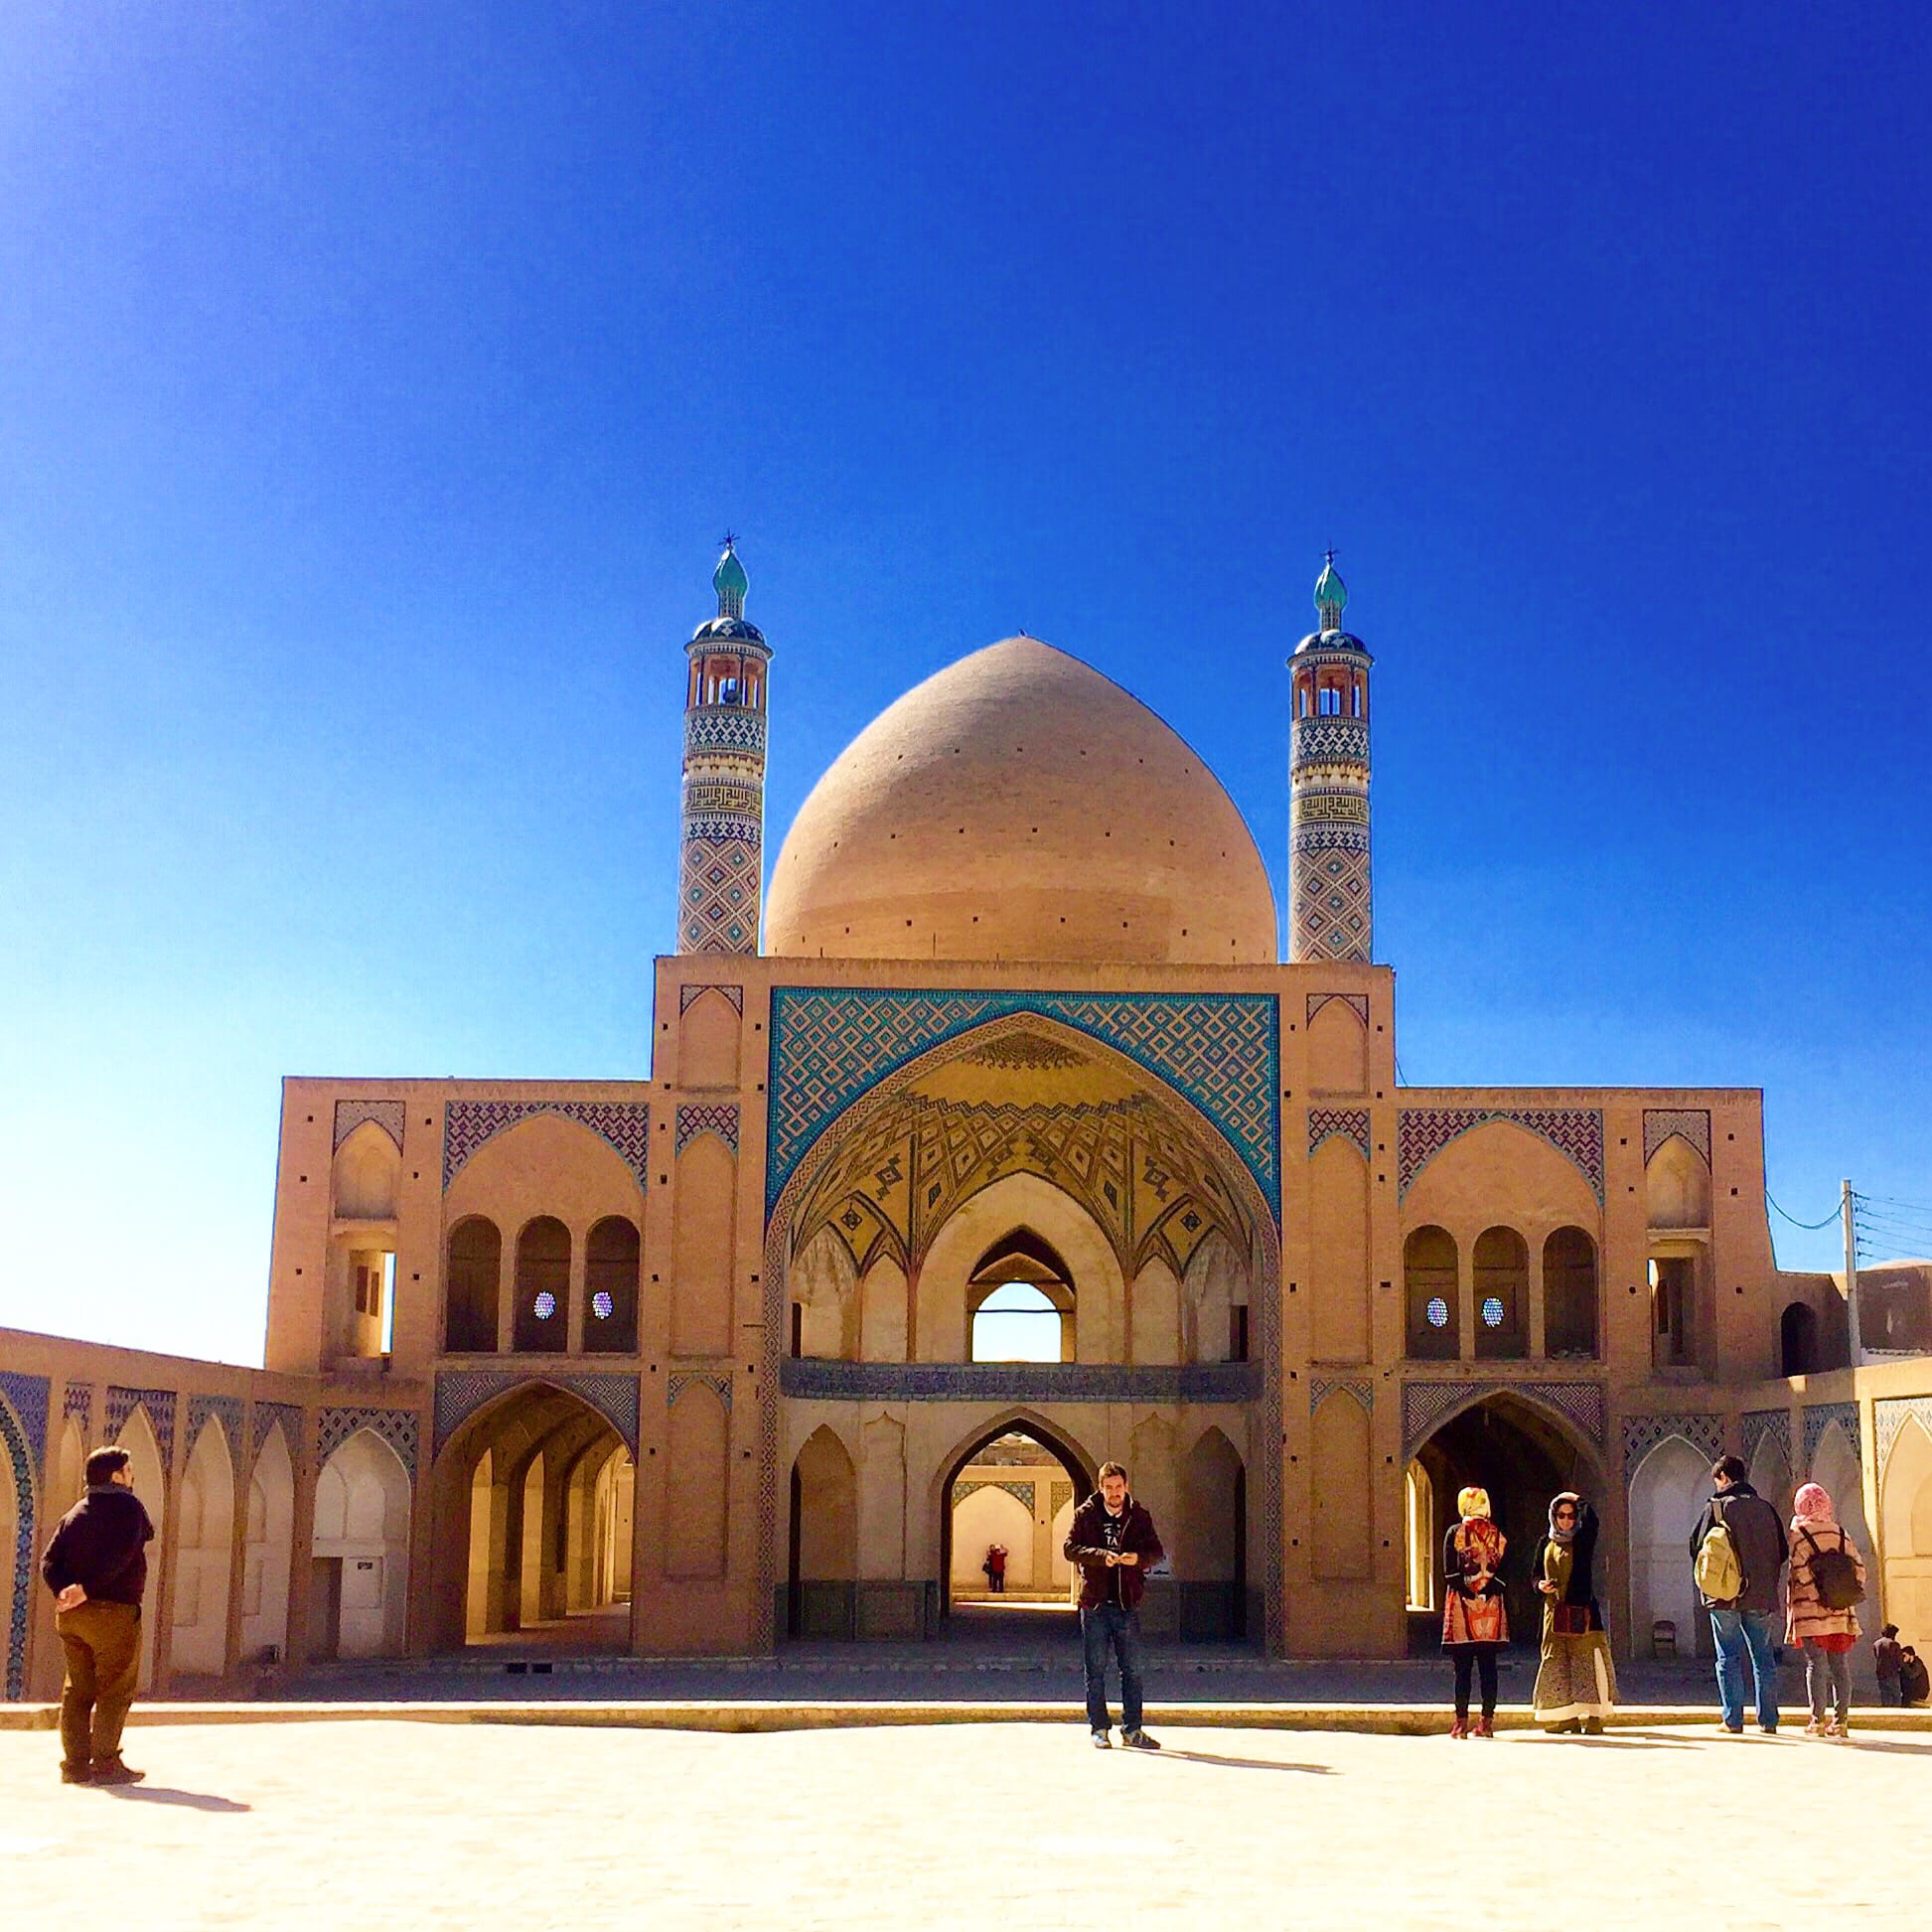 Más allá de las ramas sunitas y chiítas del Islam, se impone la belleza de las mezquitas musulmanas, como las de esta iraní. Foto de Ana López Carvajal.